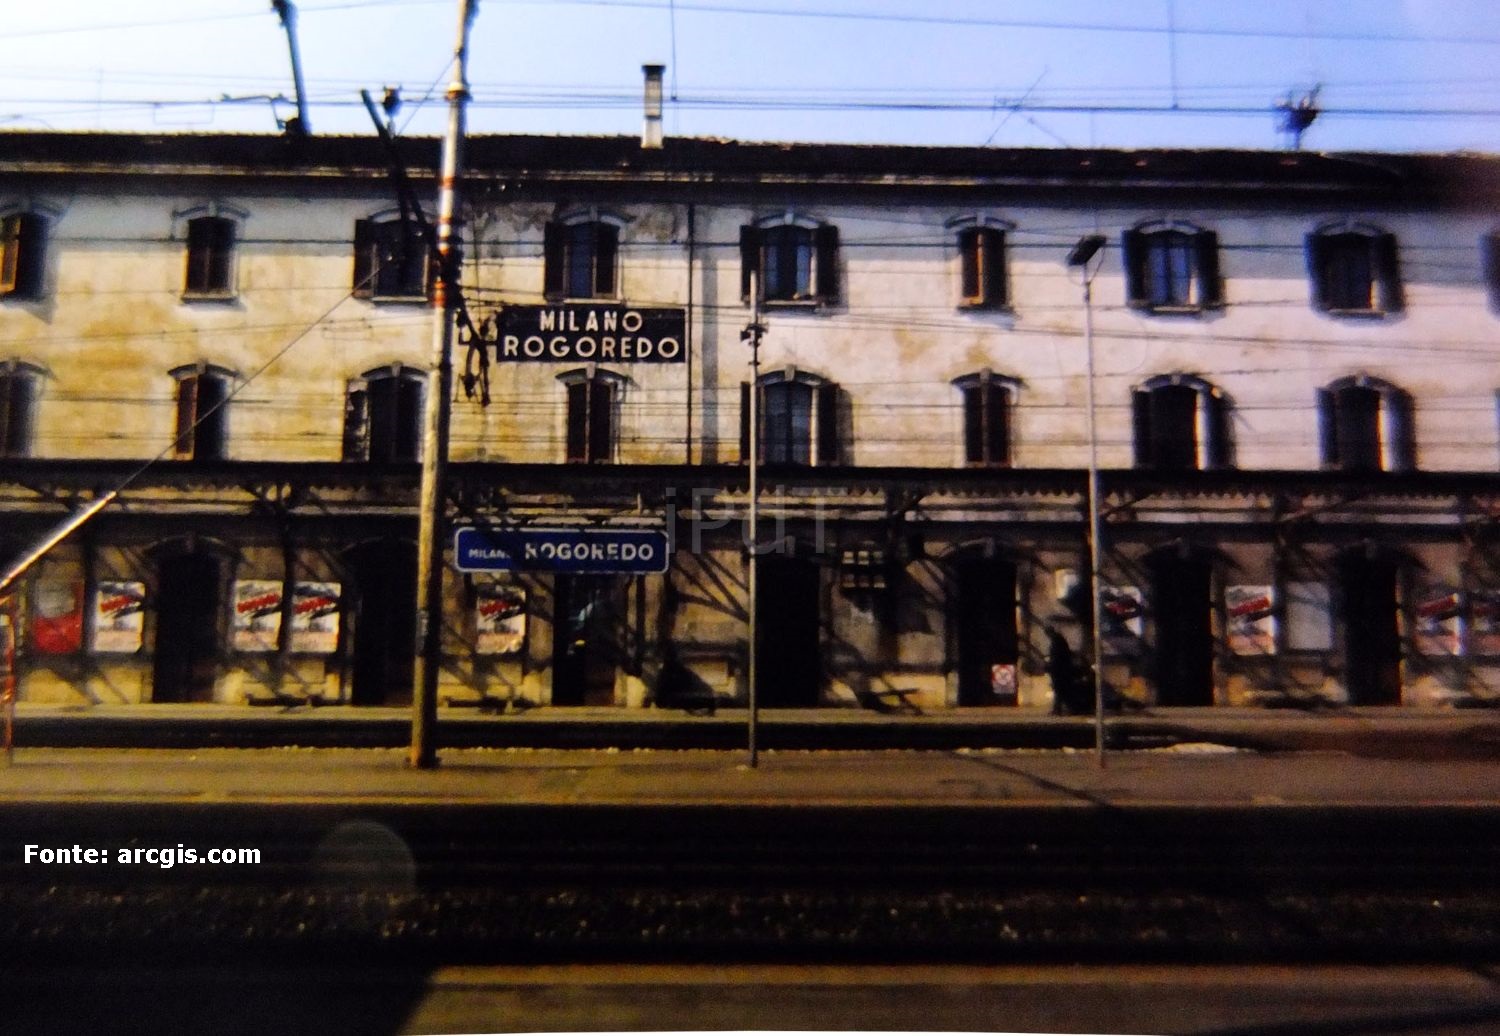 Stazione Rogoredo FS, 1984.L'immagine ritrale la vecchia stazione ferroviaria poco prima della sua demolizione con ricostruzione di quella attualmente esistente.